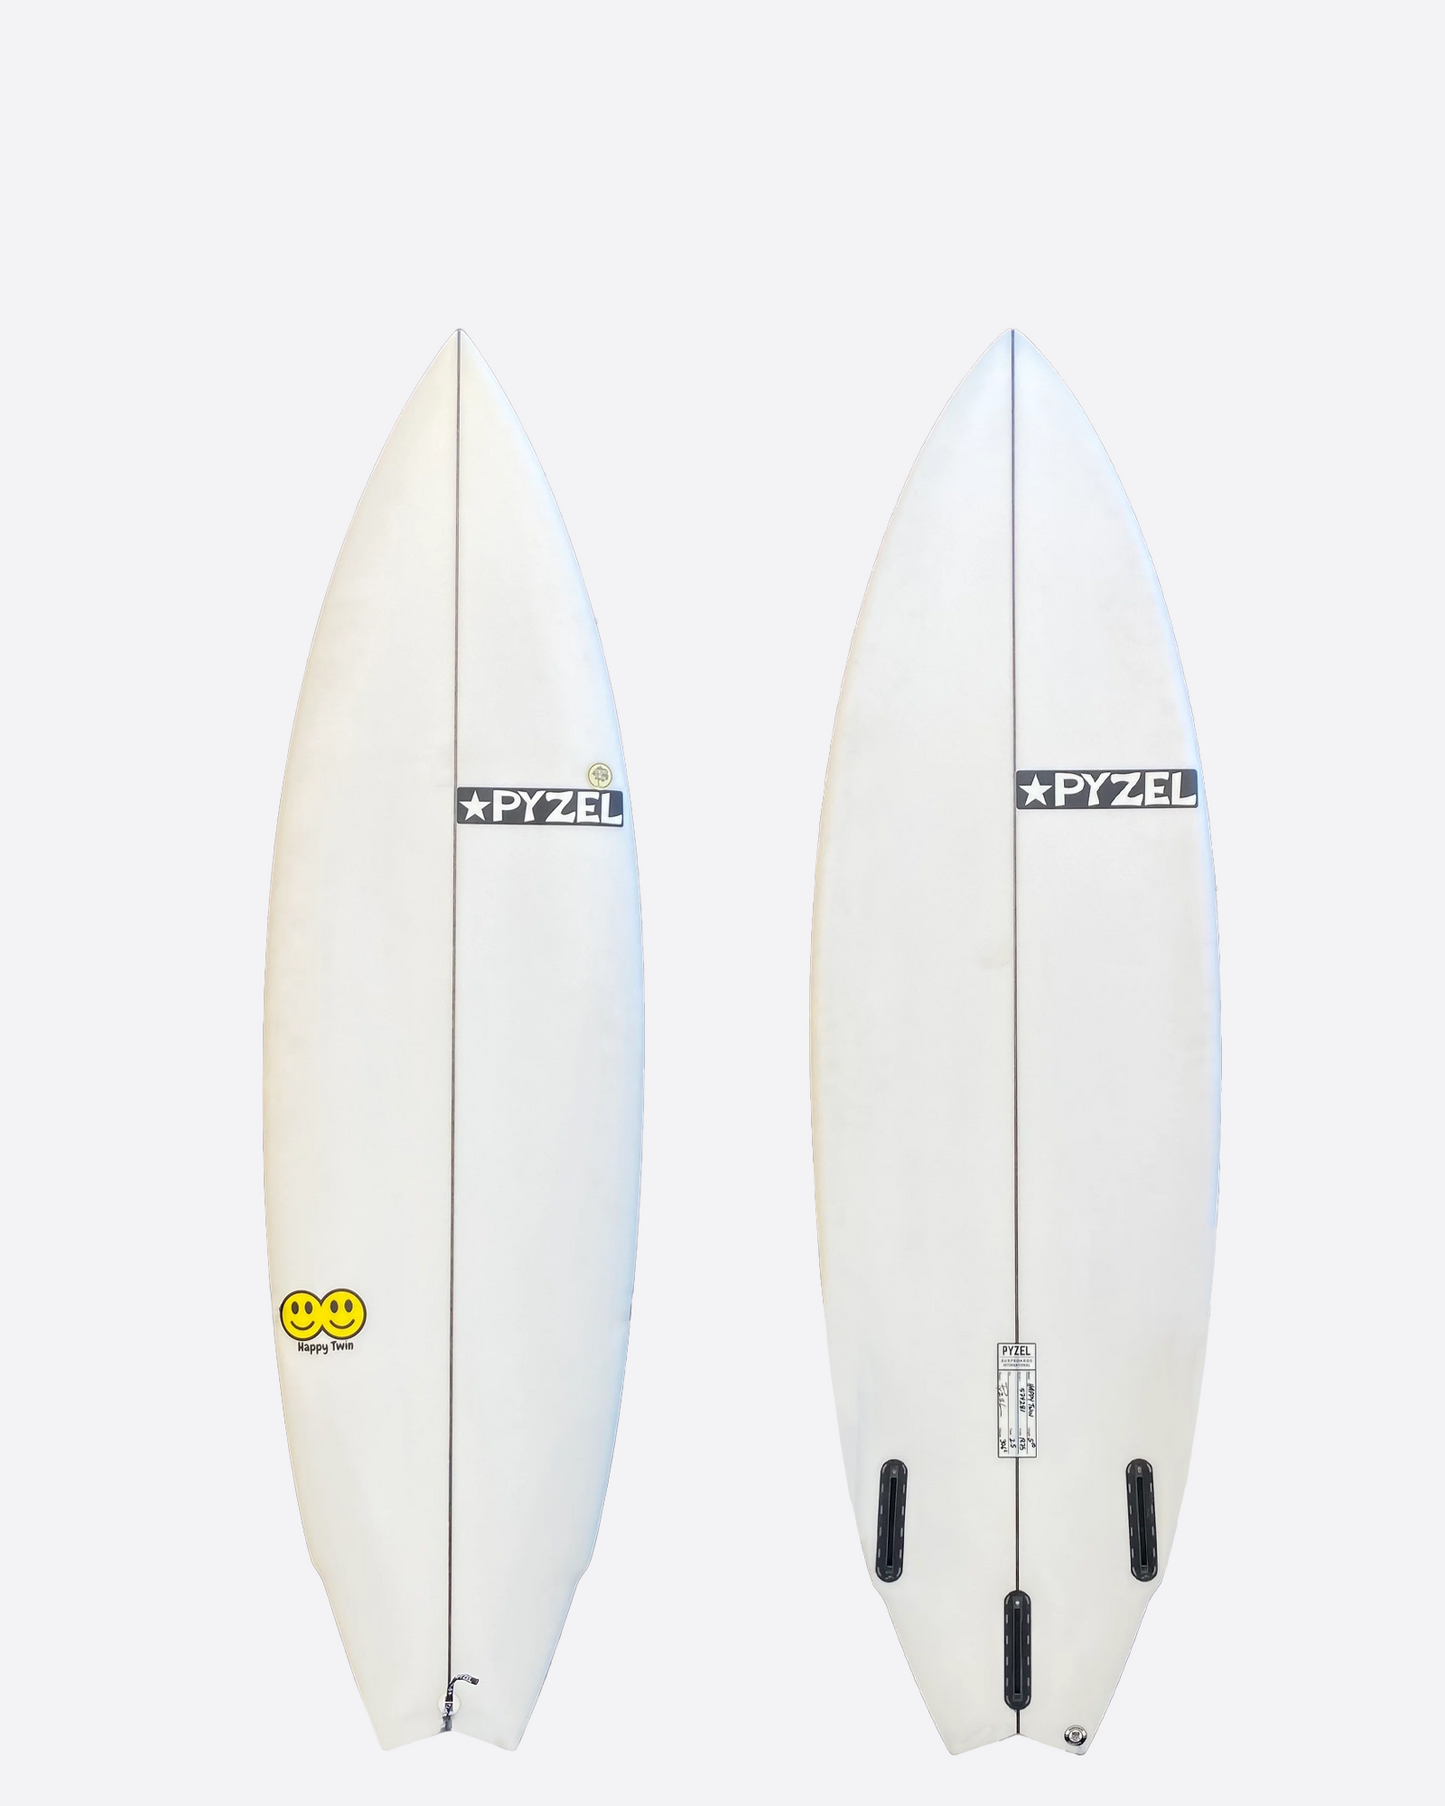 PYZEL 5’10 Happy Twin Surfboard